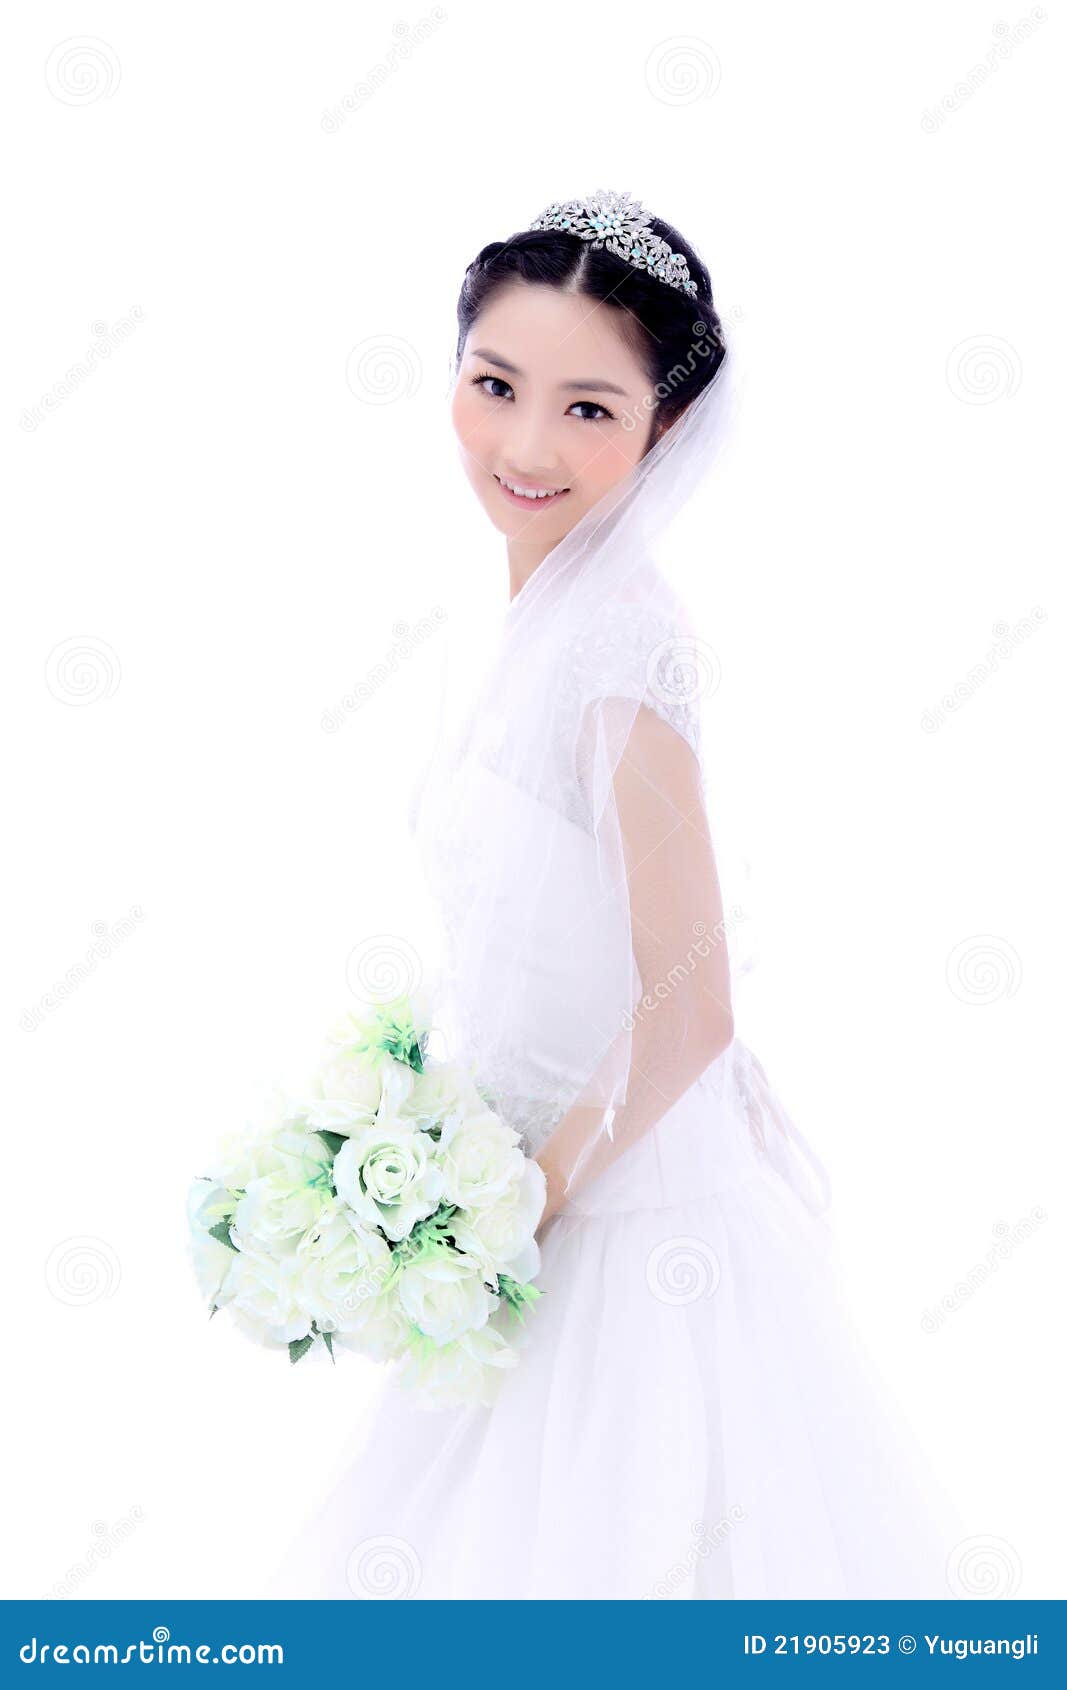 Panna młoda z kwiatami. Panna młoda target657_0_ jedwabiu smokingowego mienia pięknego bukiet biały róże